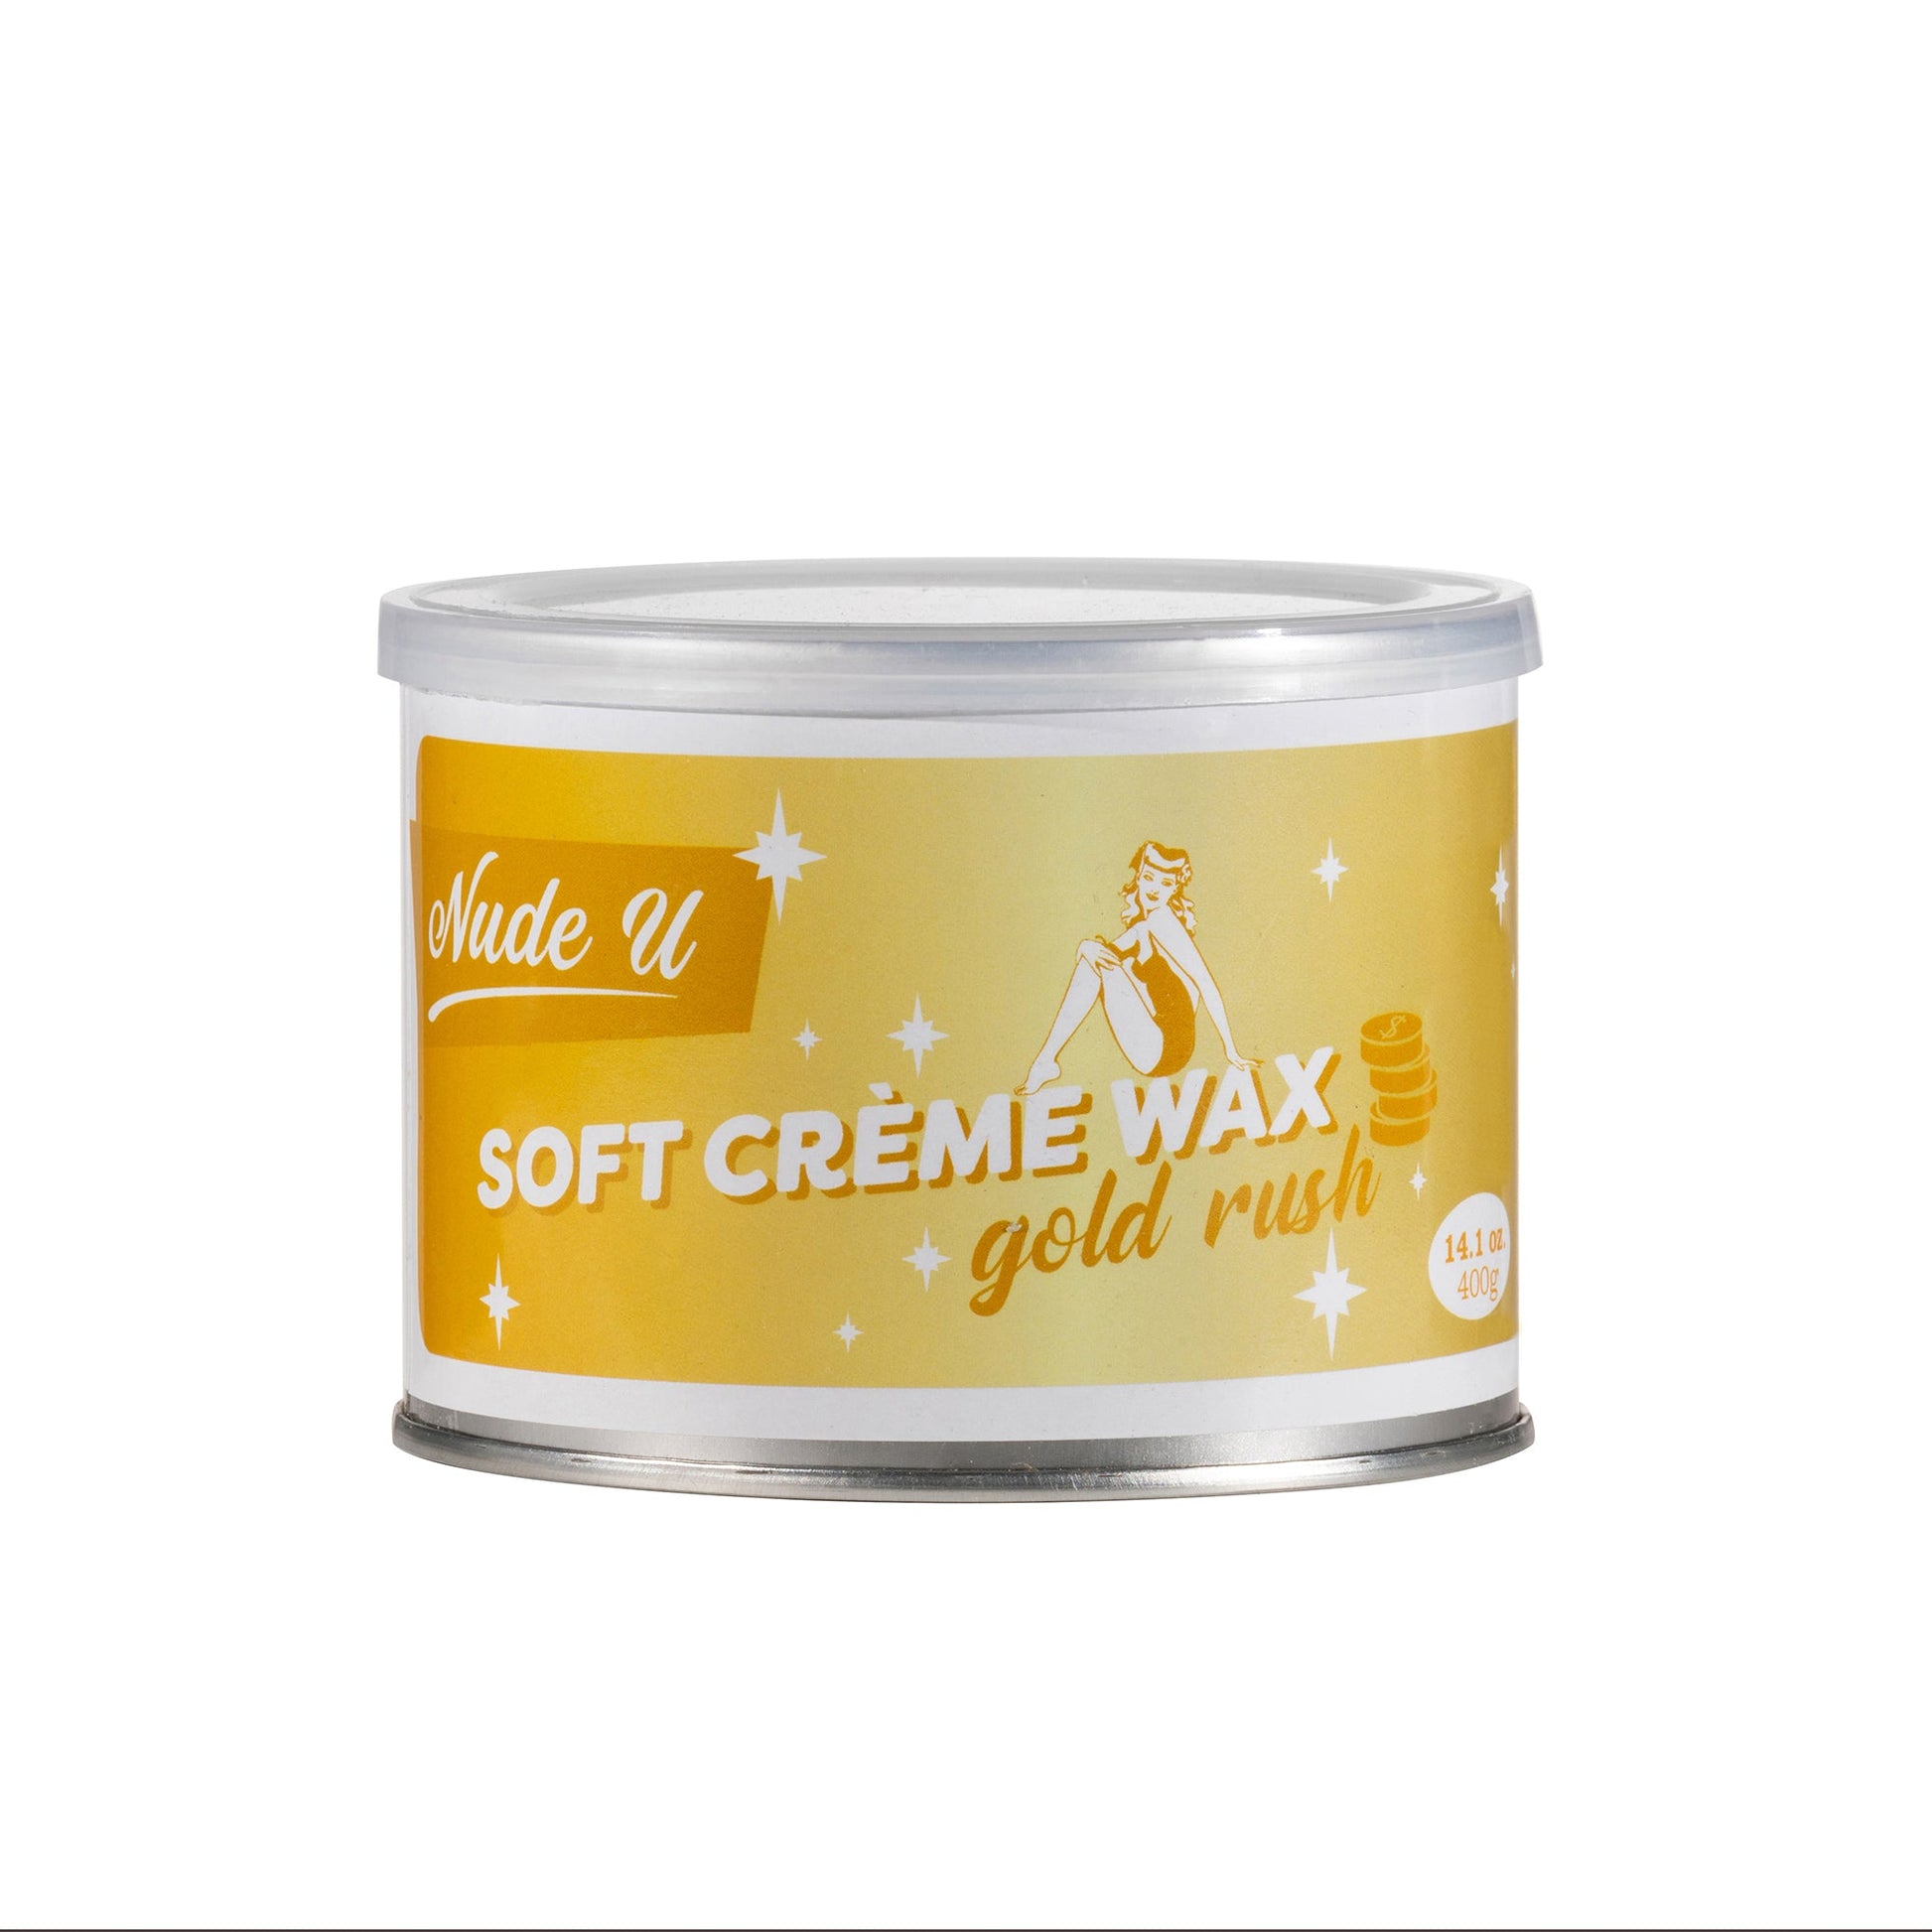 Gold Rush Soft Creme Wax | NUDE U - SH Salons